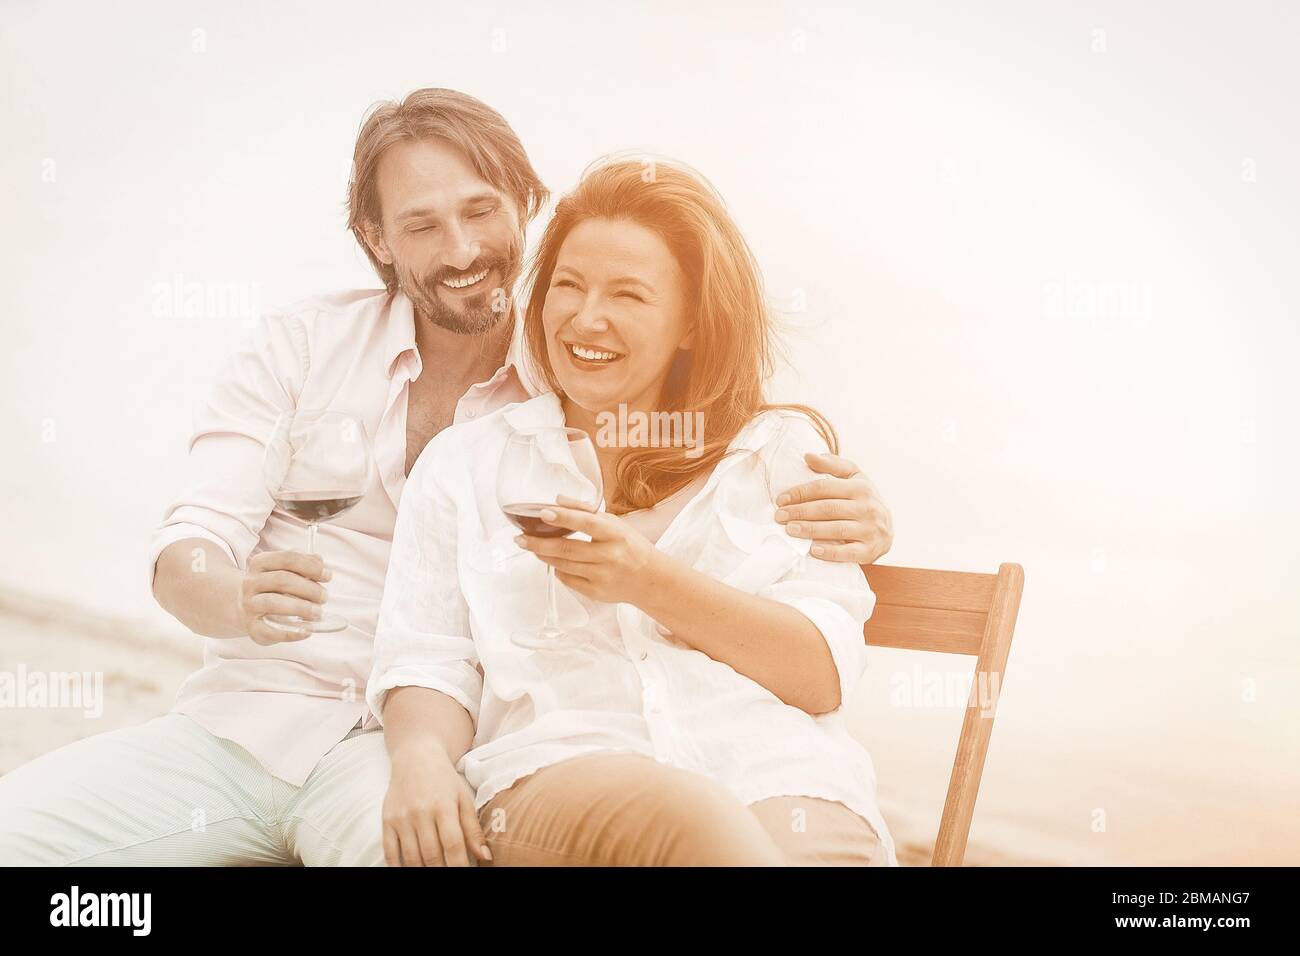 Un couple heureux passe du temps à se reposer ensemble près de la mer. Homme et une femme boivent du vin rouge sourire et embrasser tout en s'asseyant près de l'eau à l'extérieur. Ton Banque D'Images